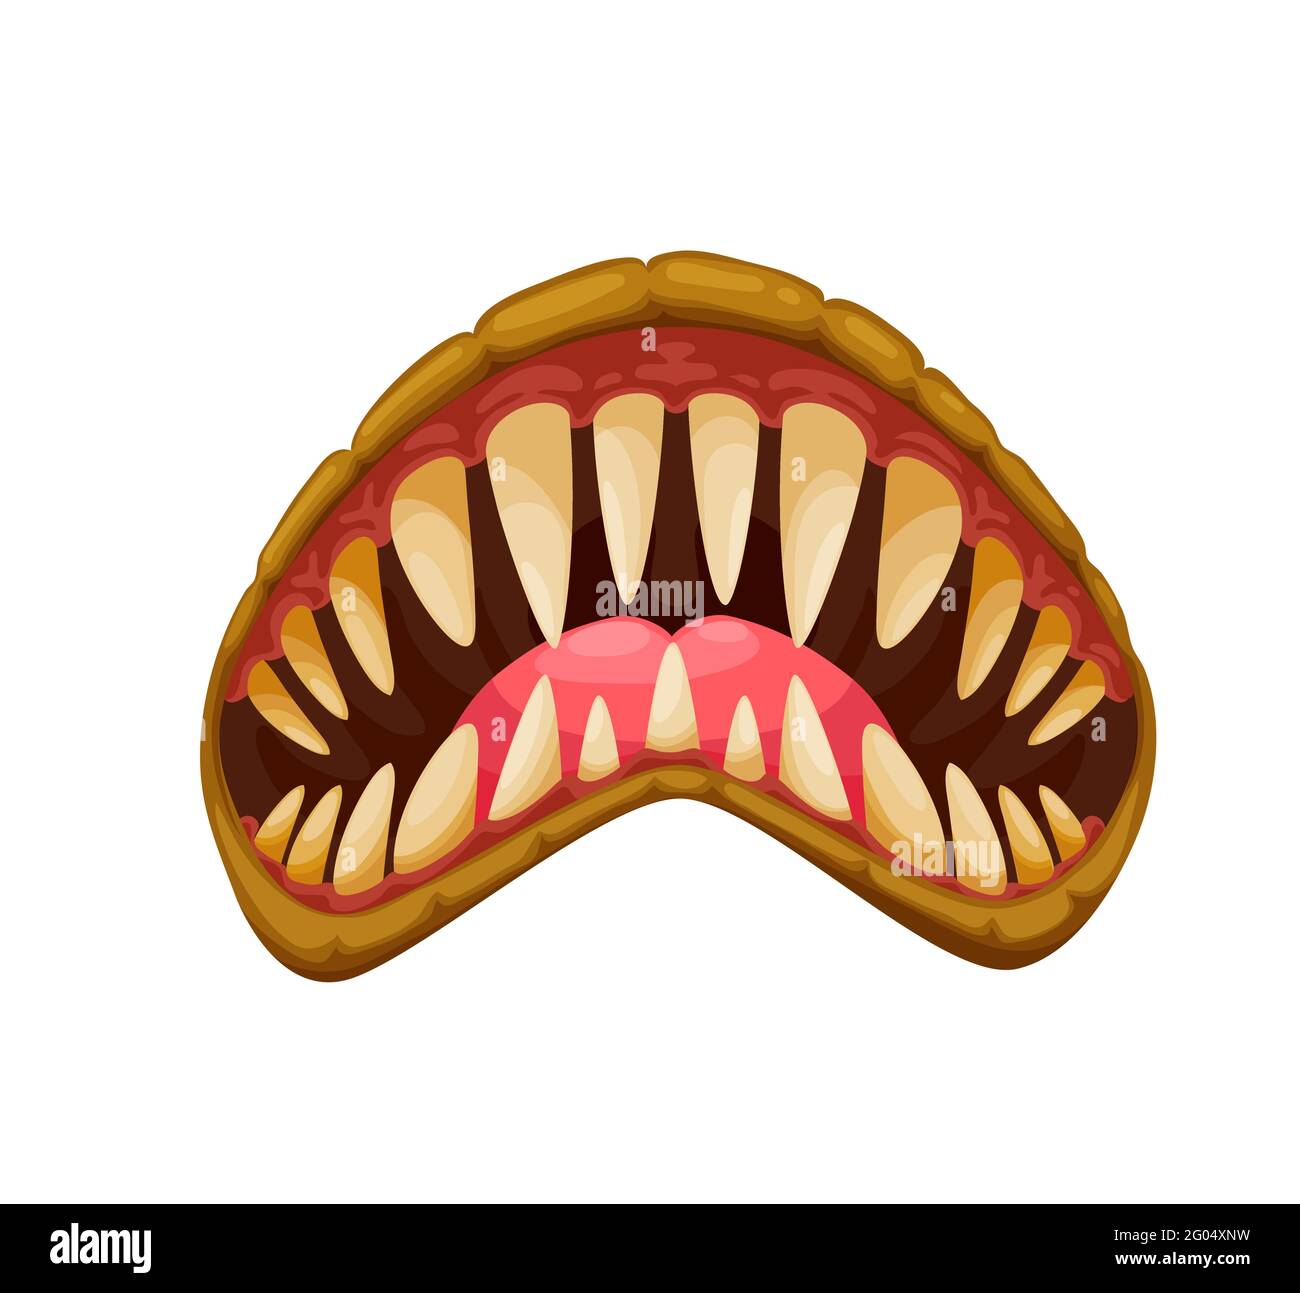 monster teeth vector